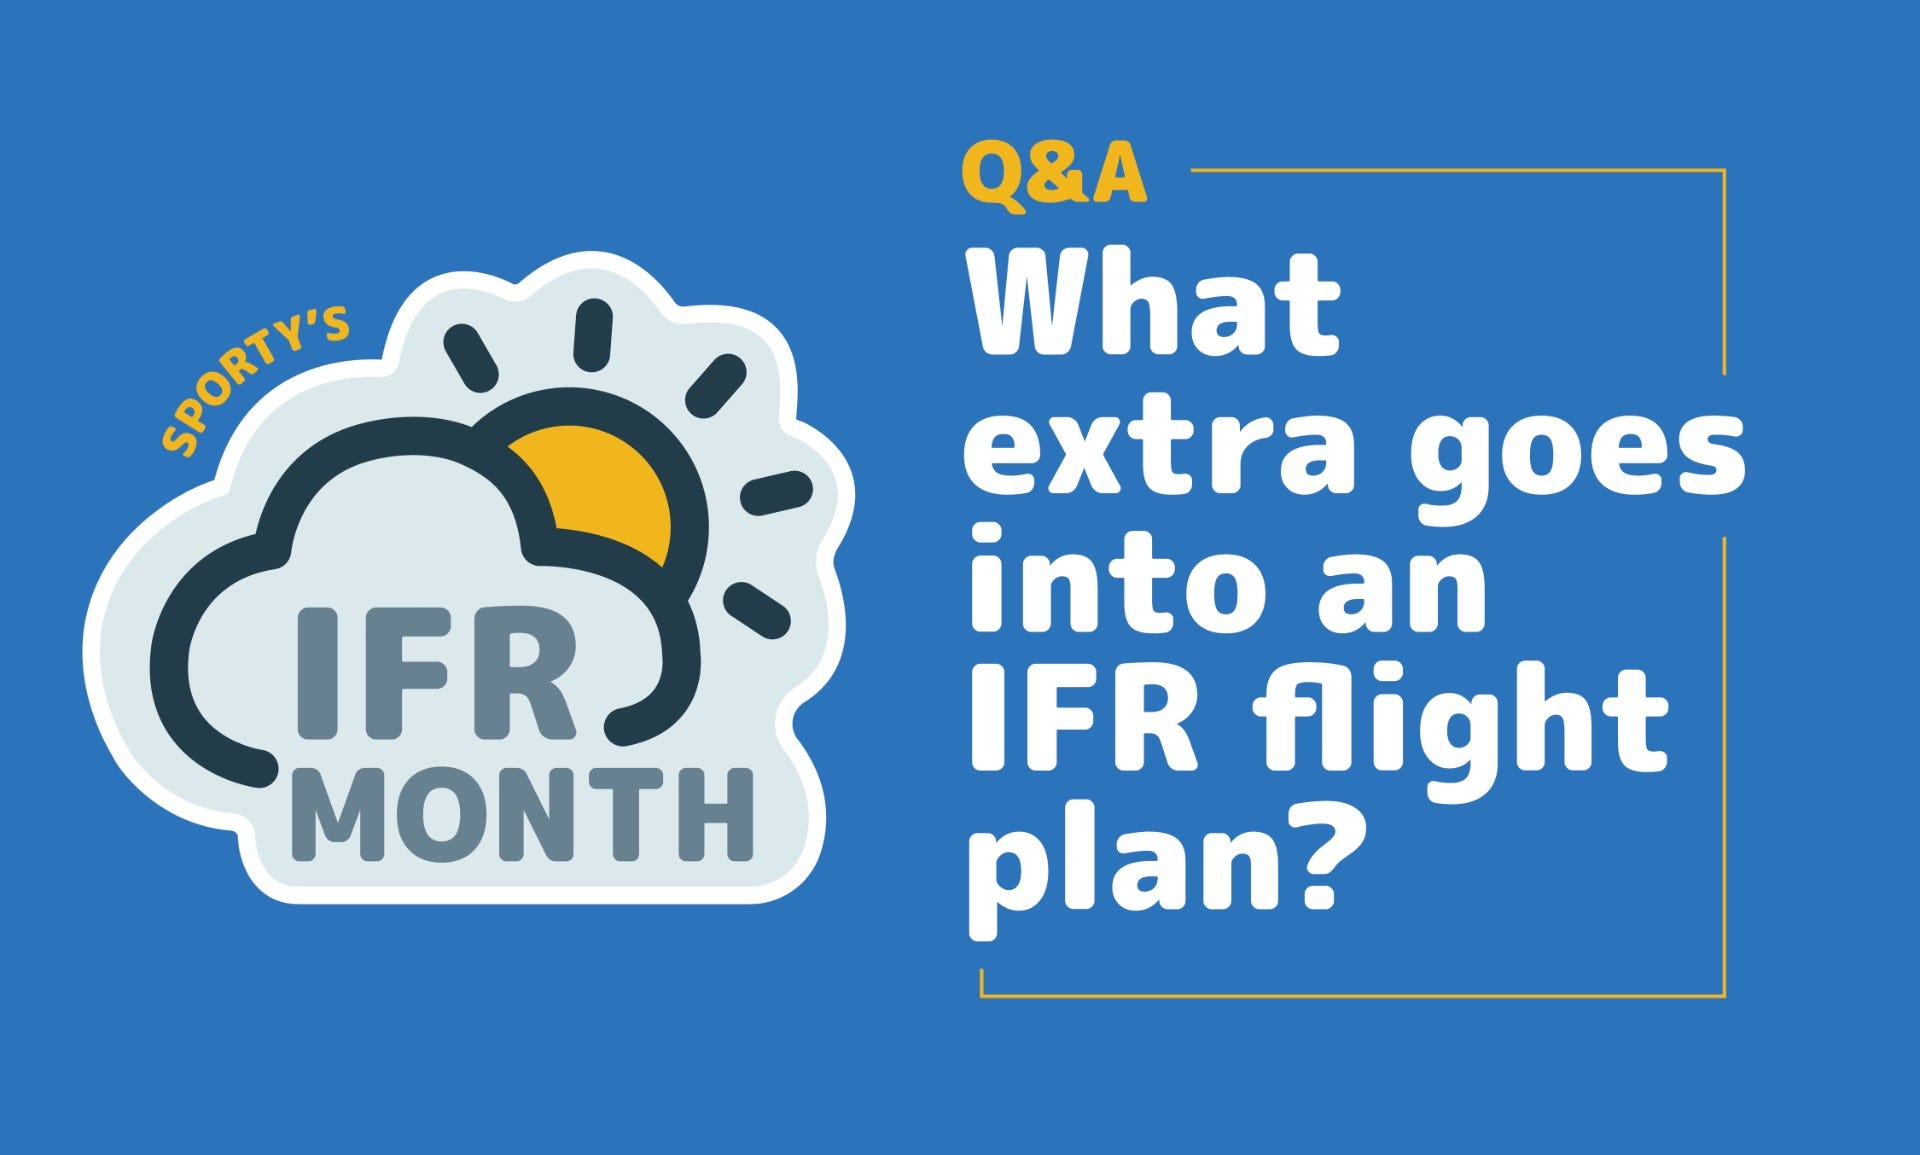 IFR flight plan